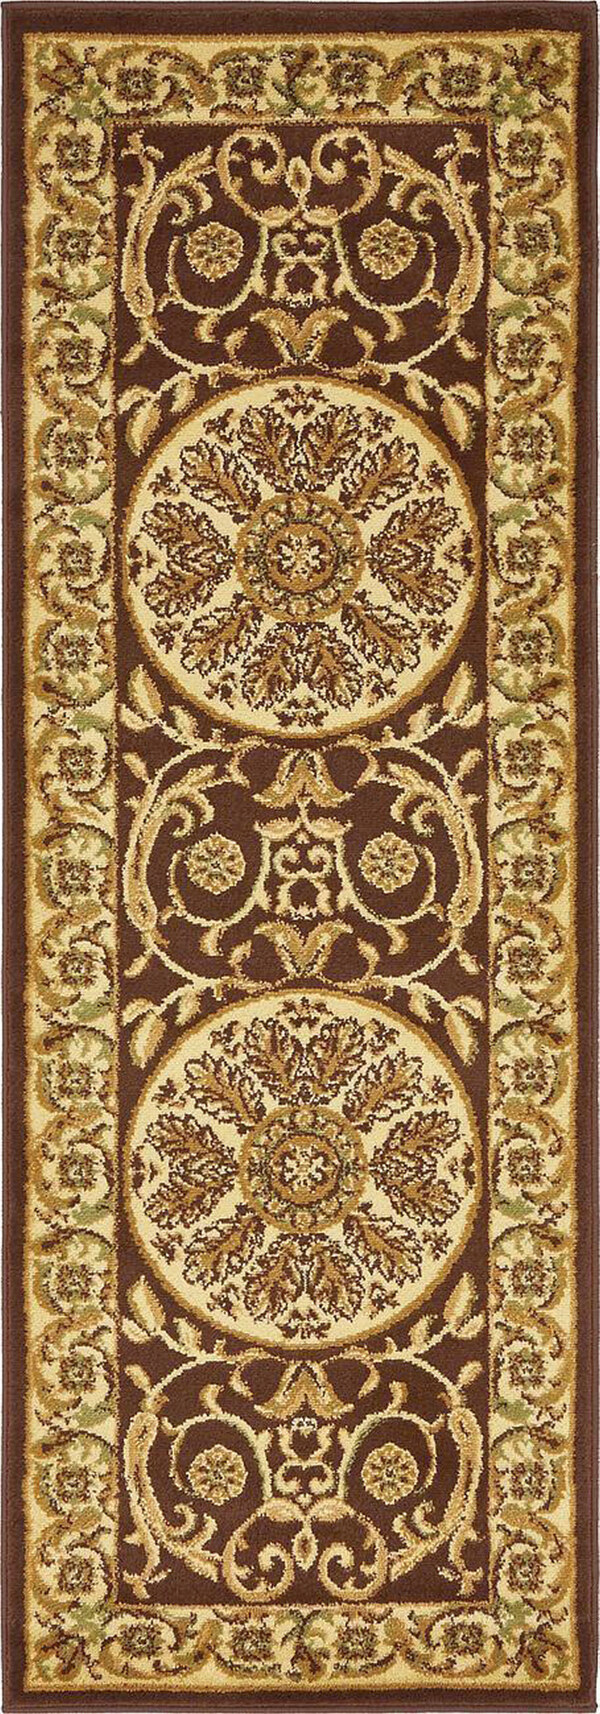 古典经典地毯布匹纹理jpg图片